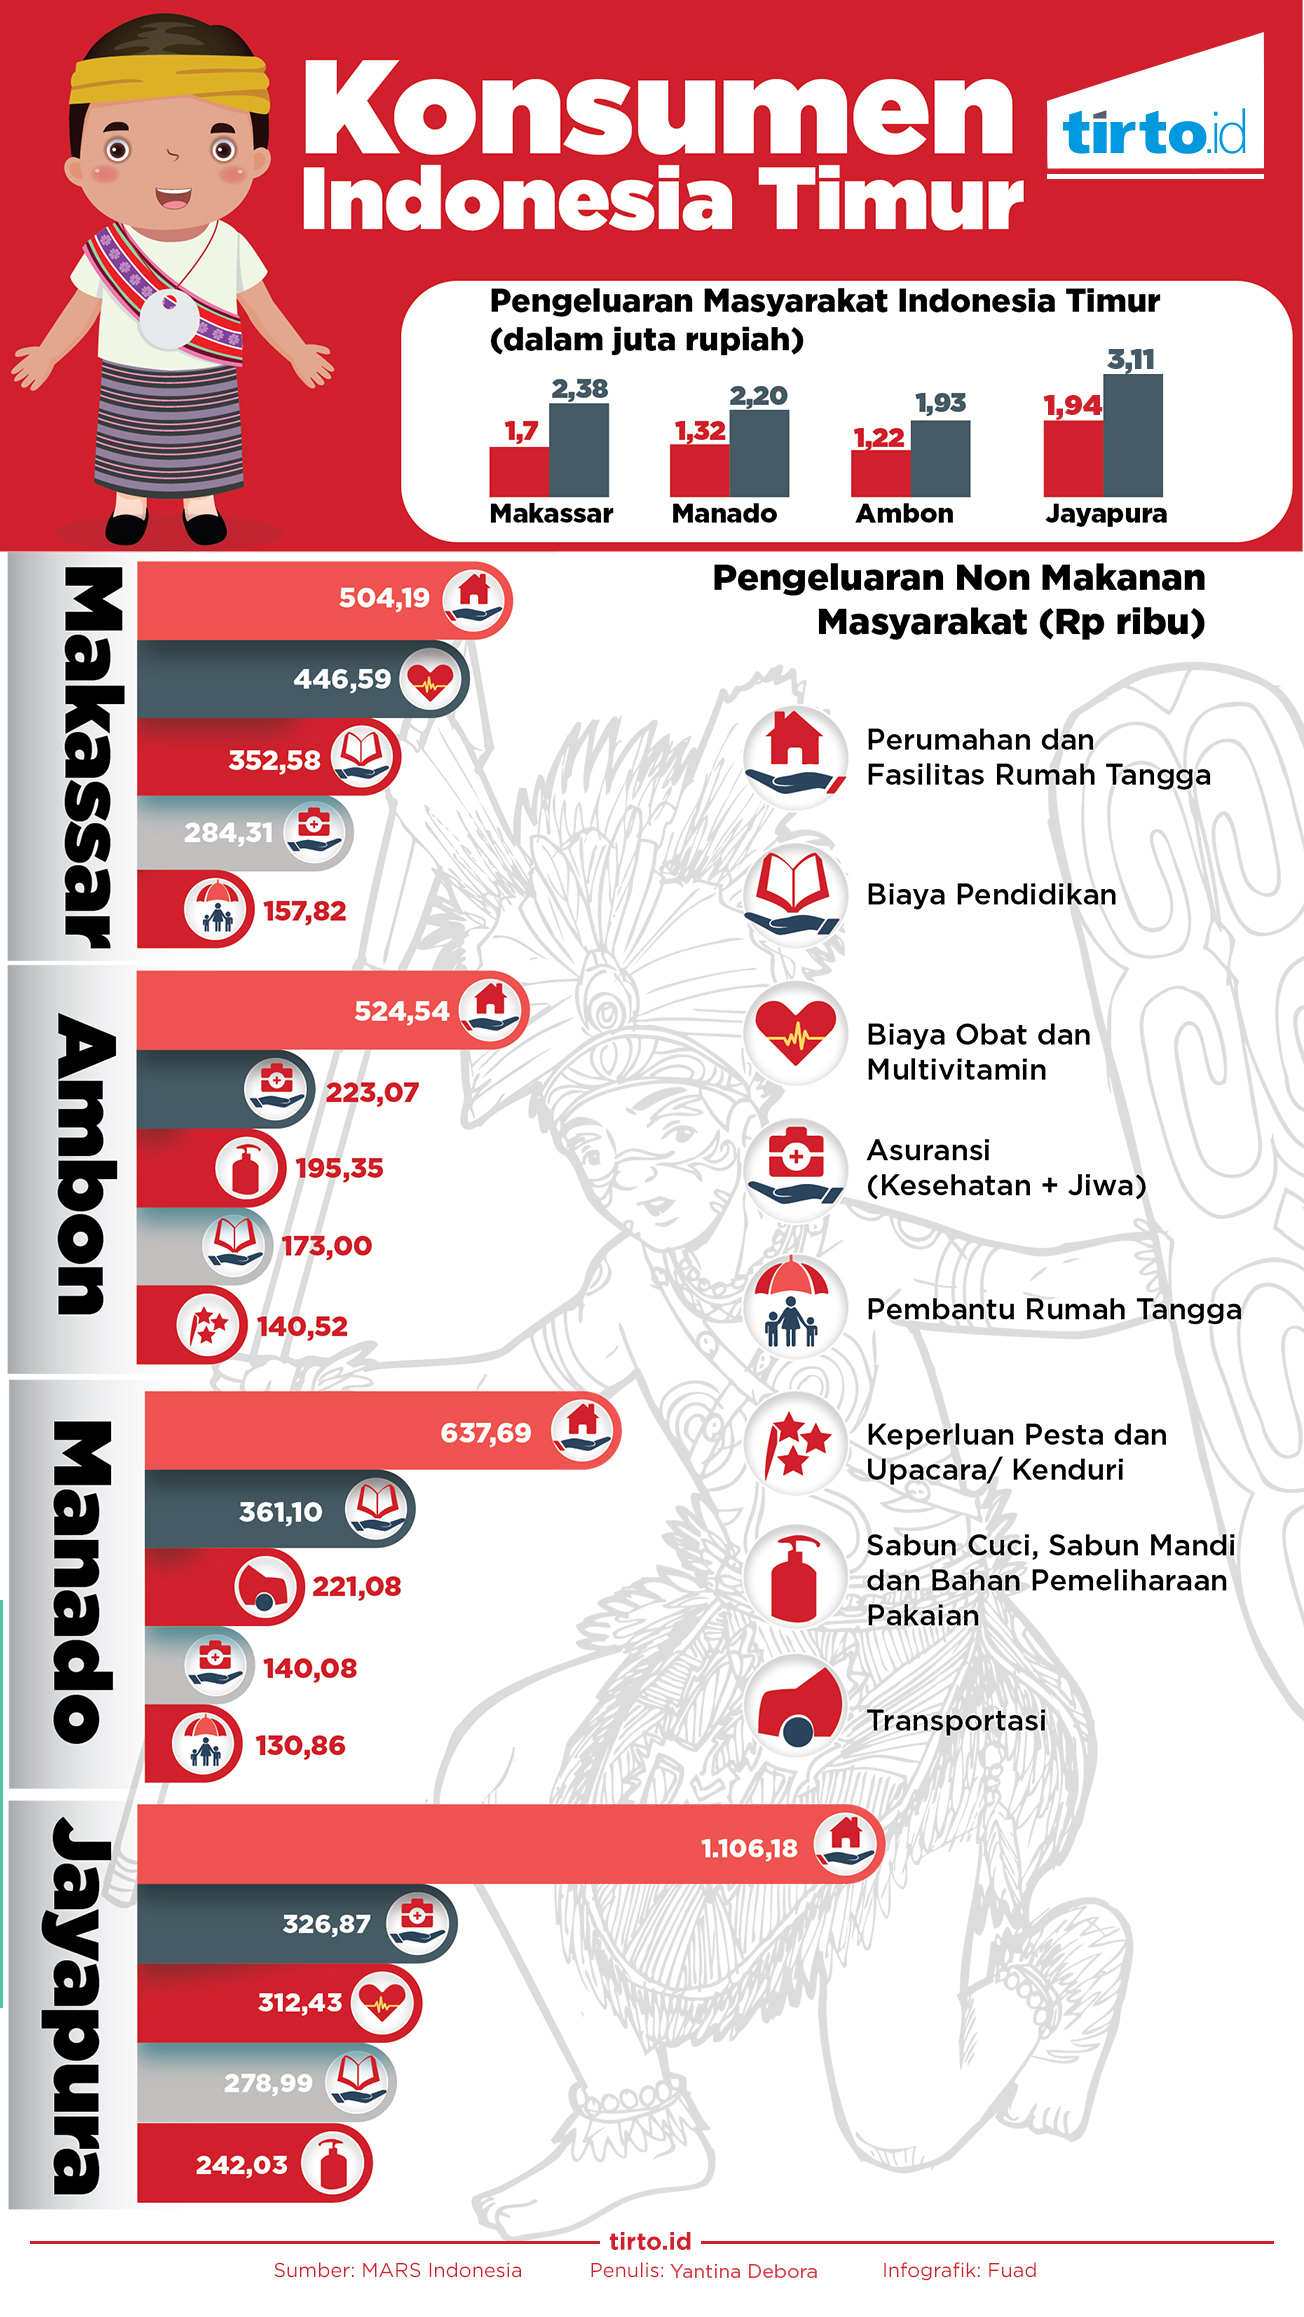 Menurut survei MARS pengeluaran nonmakanan terbesar di kawasan Indonesia Timur adalah untuk pe an dan fasilitas tangga seperti listrik